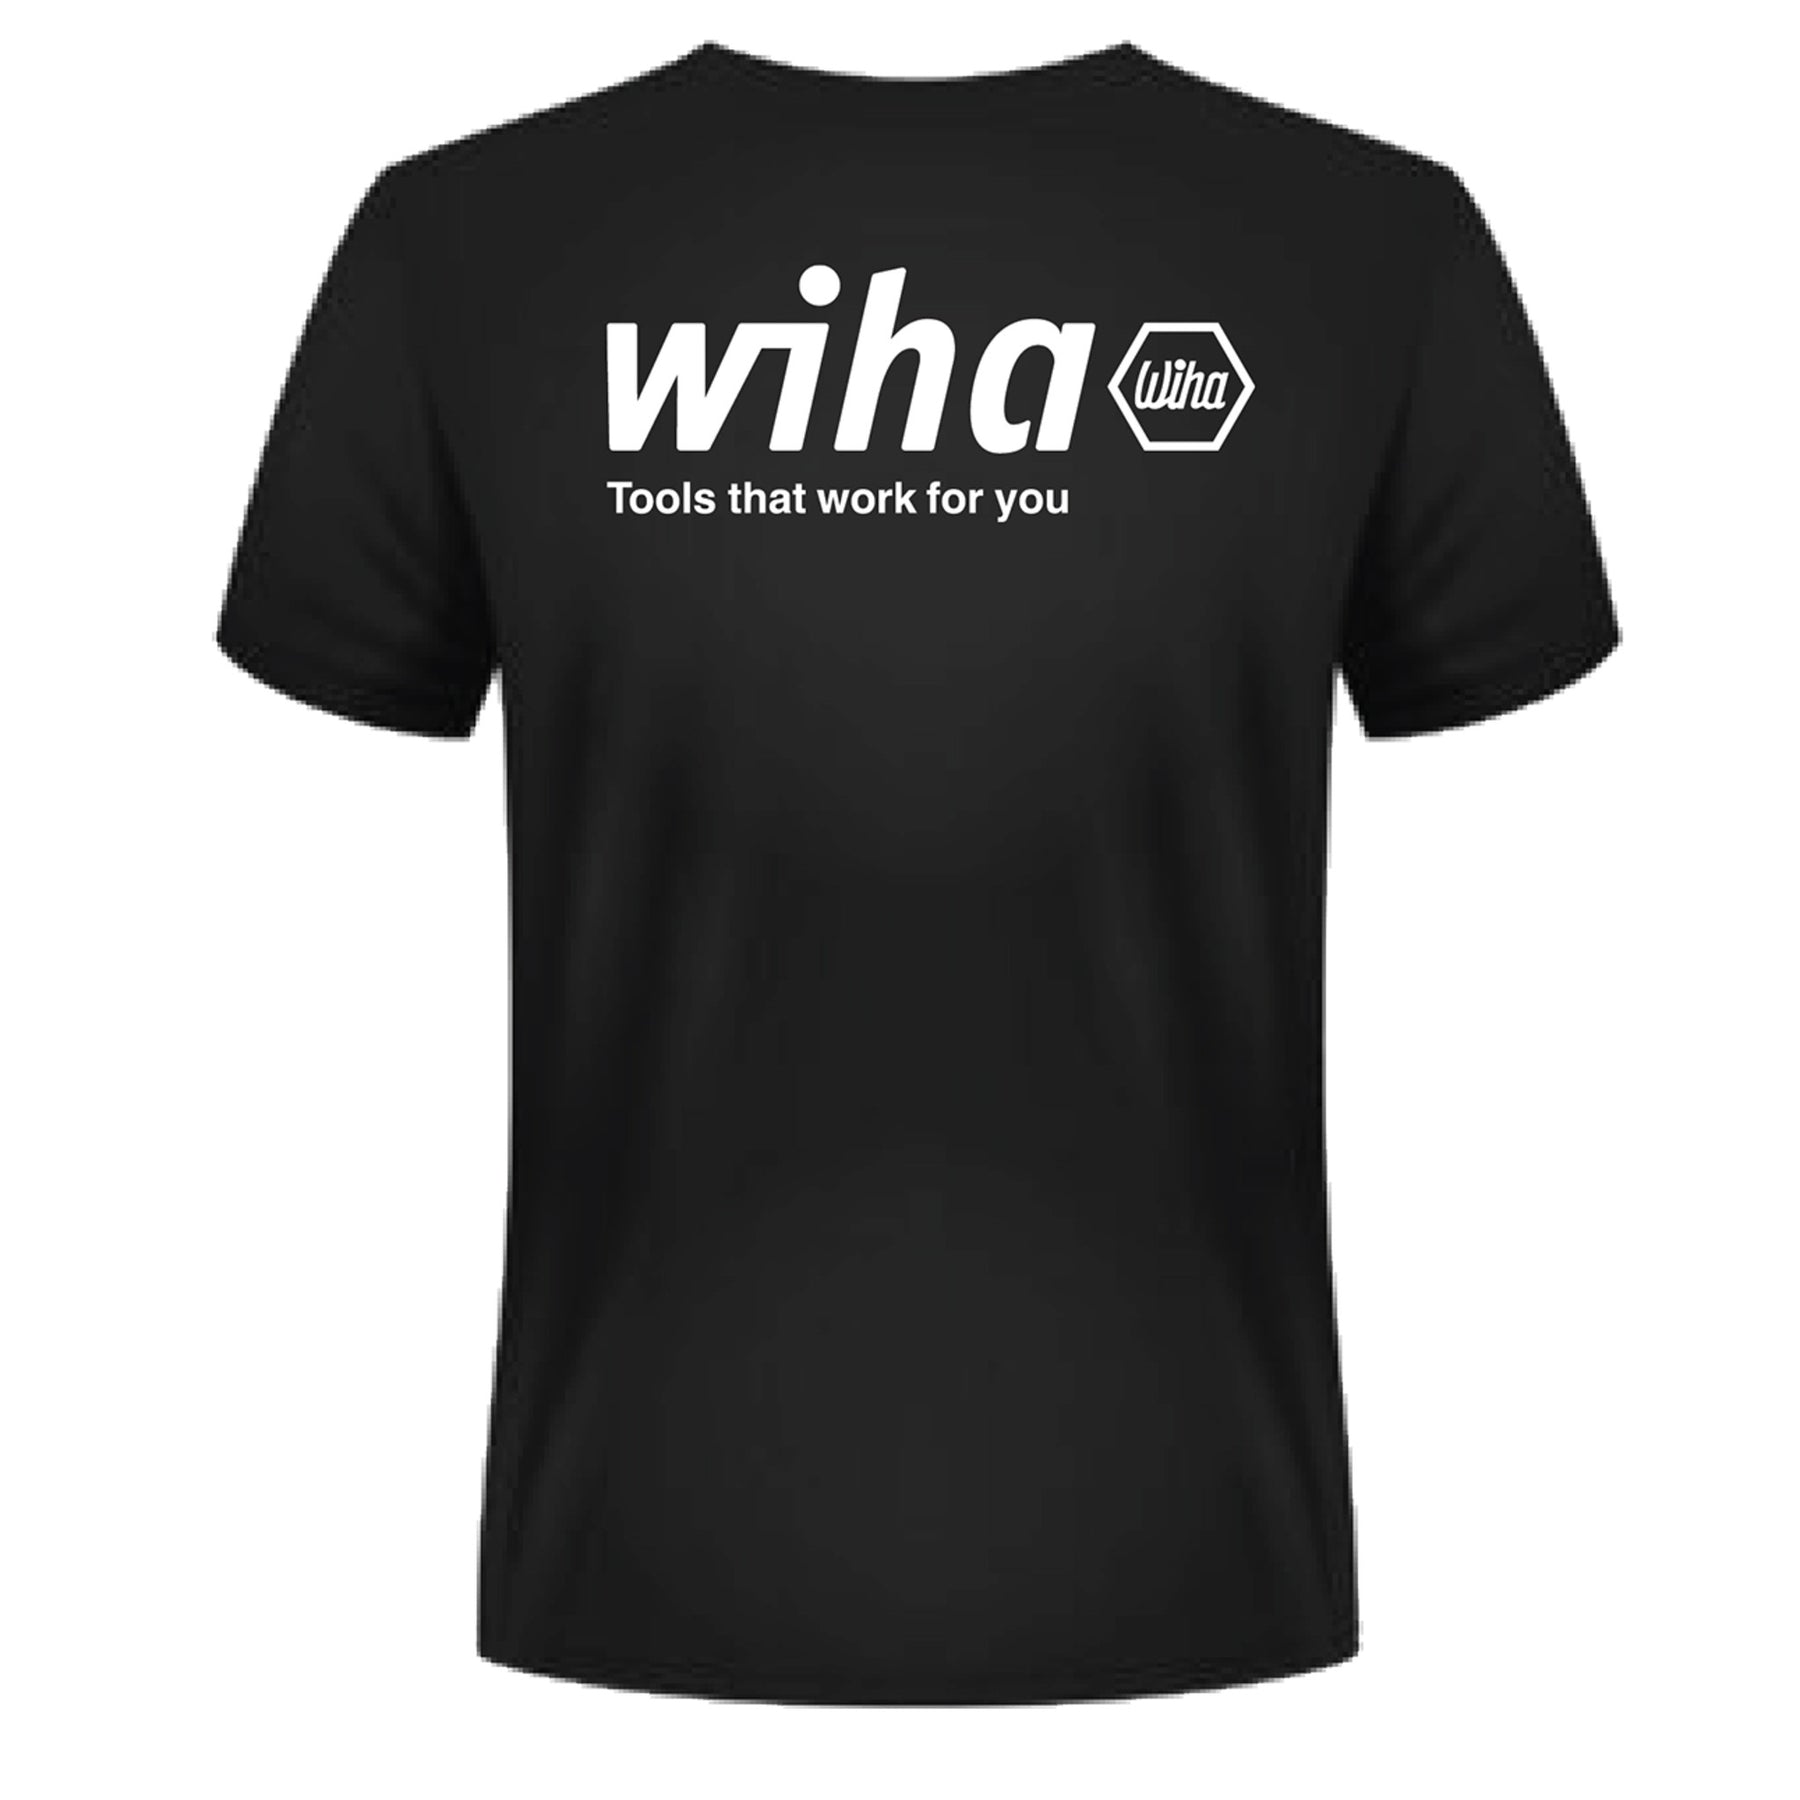 Wiha JDC Miller Motorsports T-Shirt Large